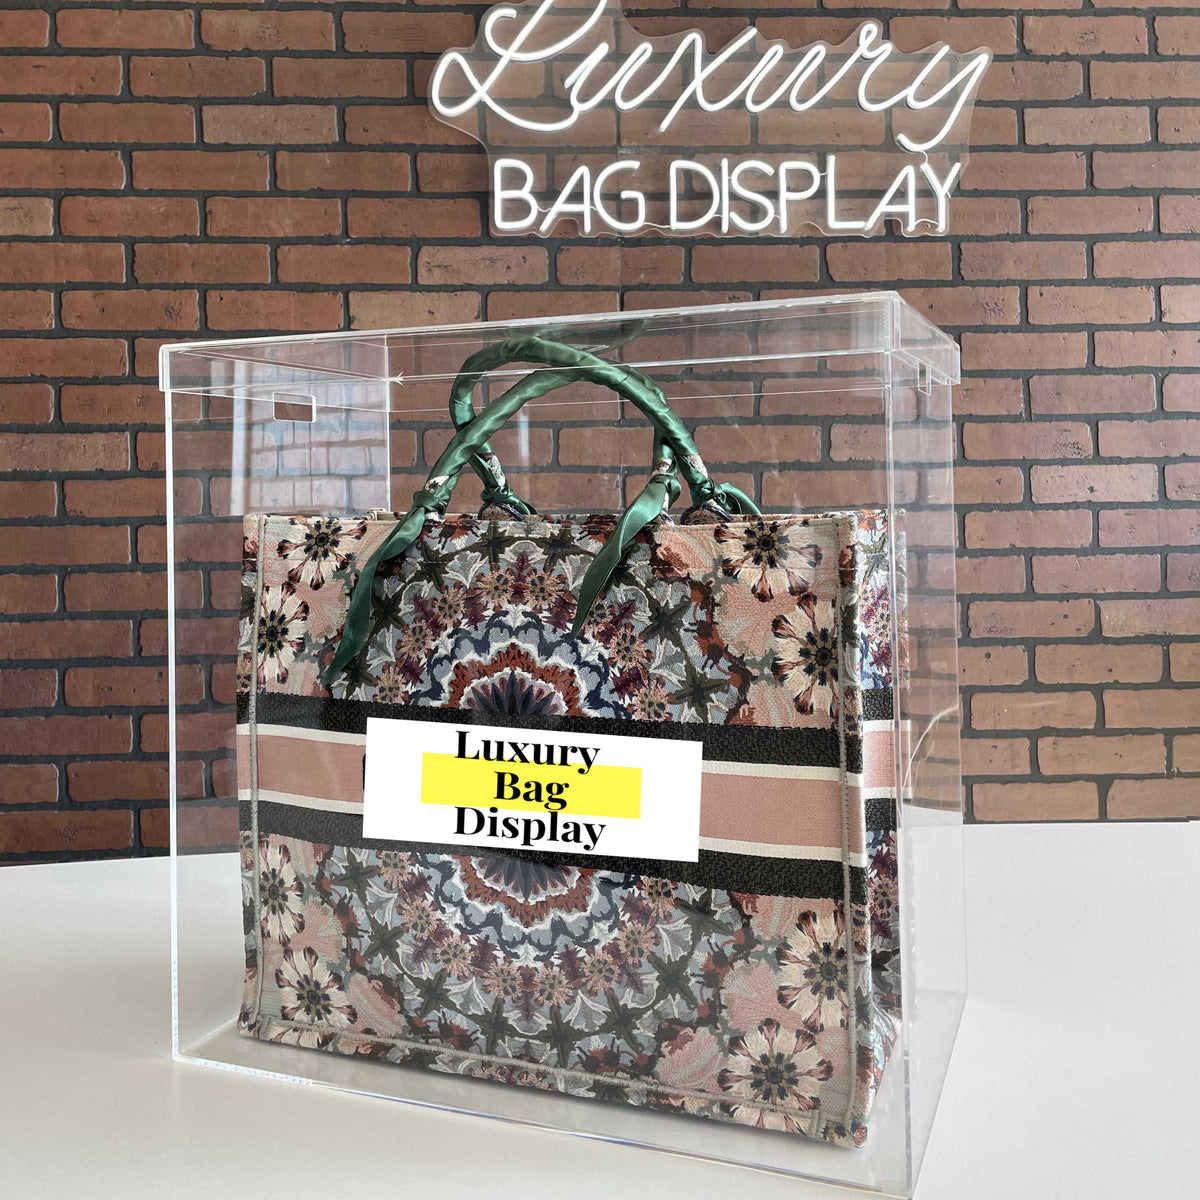 B 4.0 Display Case – Luxury Bag Display